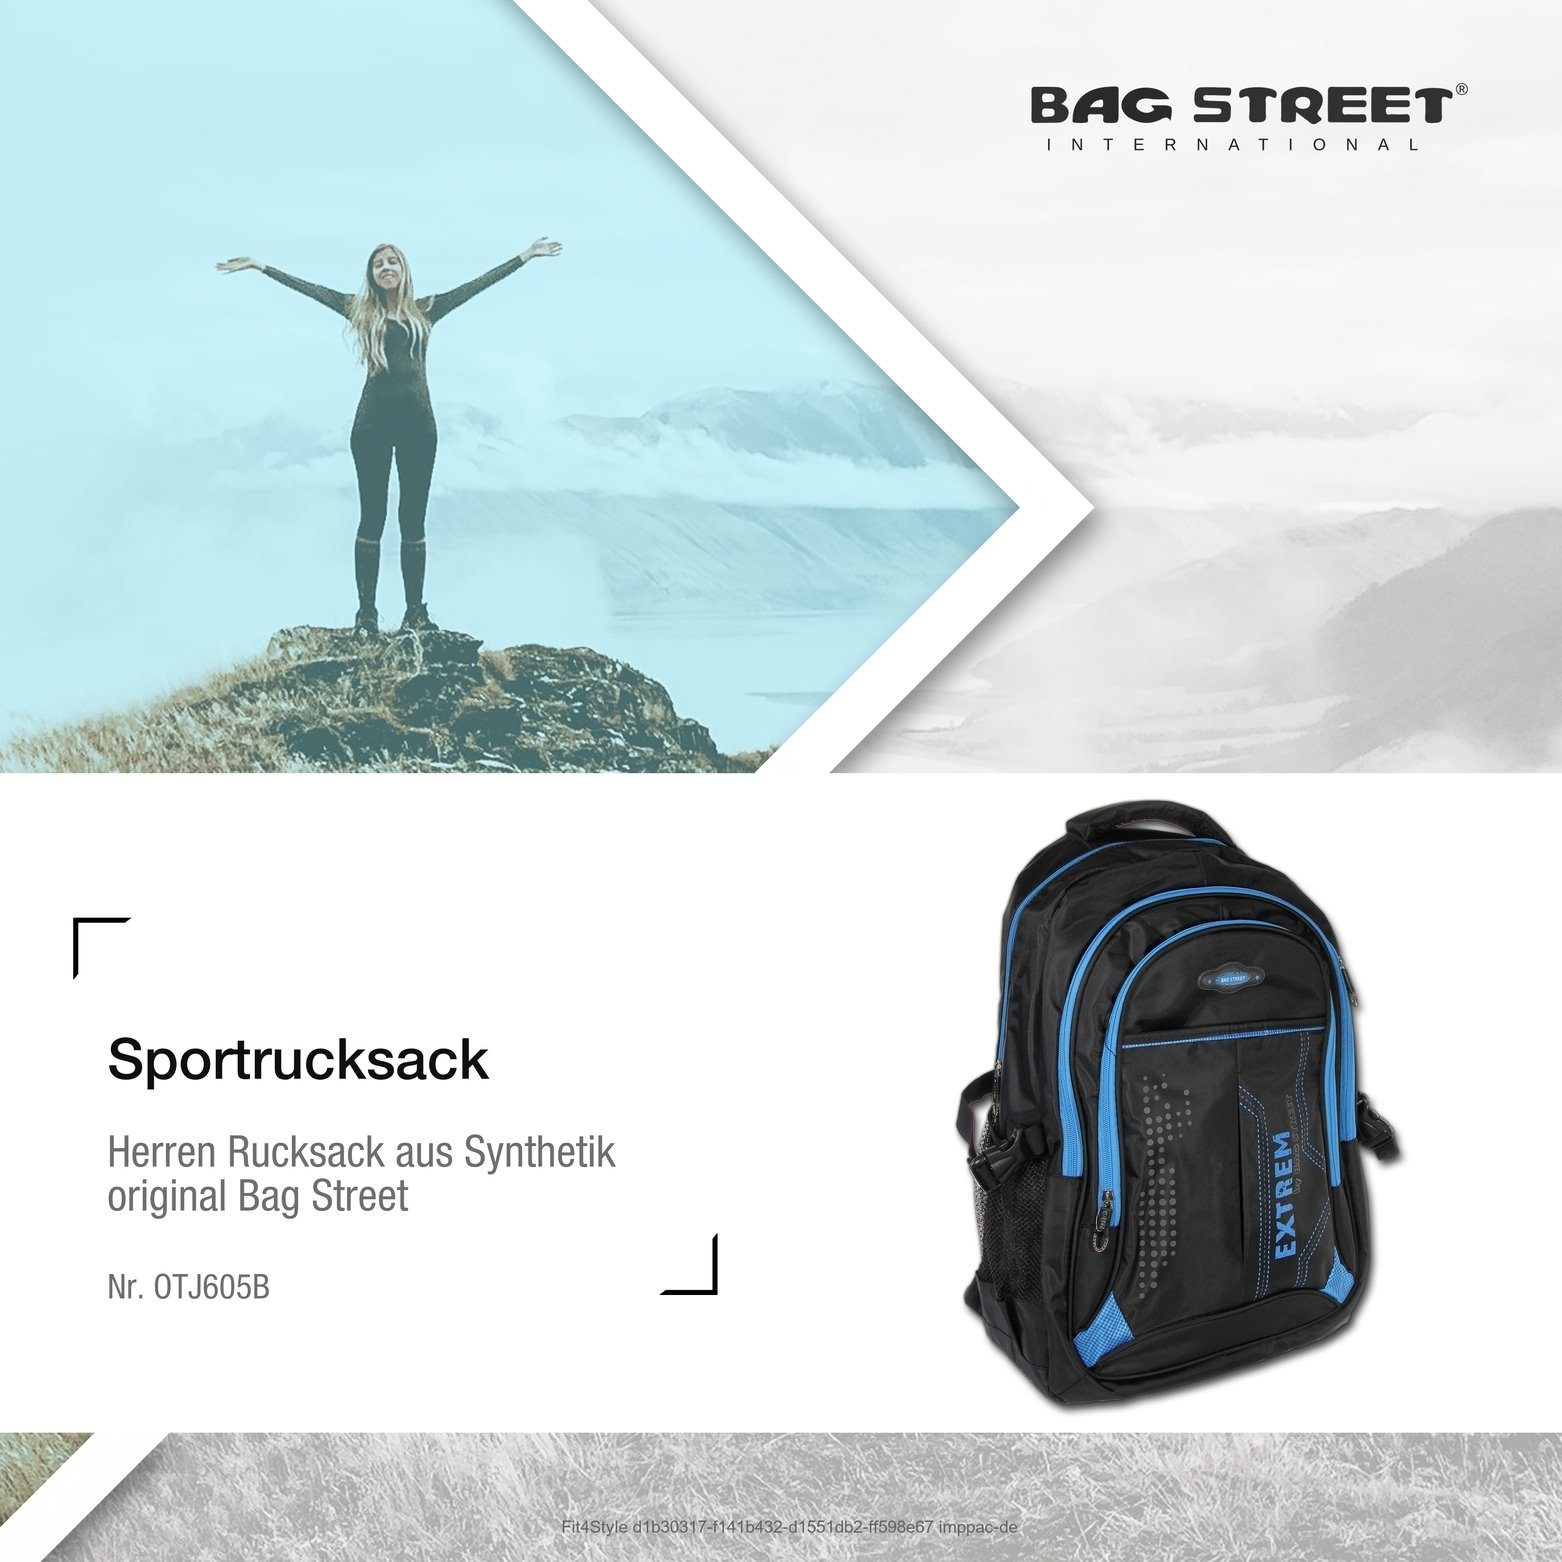 BAG STREET Freizeitrucksack Bag Street blau ca 30cm Sporttasche Damen x Herren ca. Sportrucksack, Freizeitrucksack schwarz, Synthetik, (Sportrucksack)